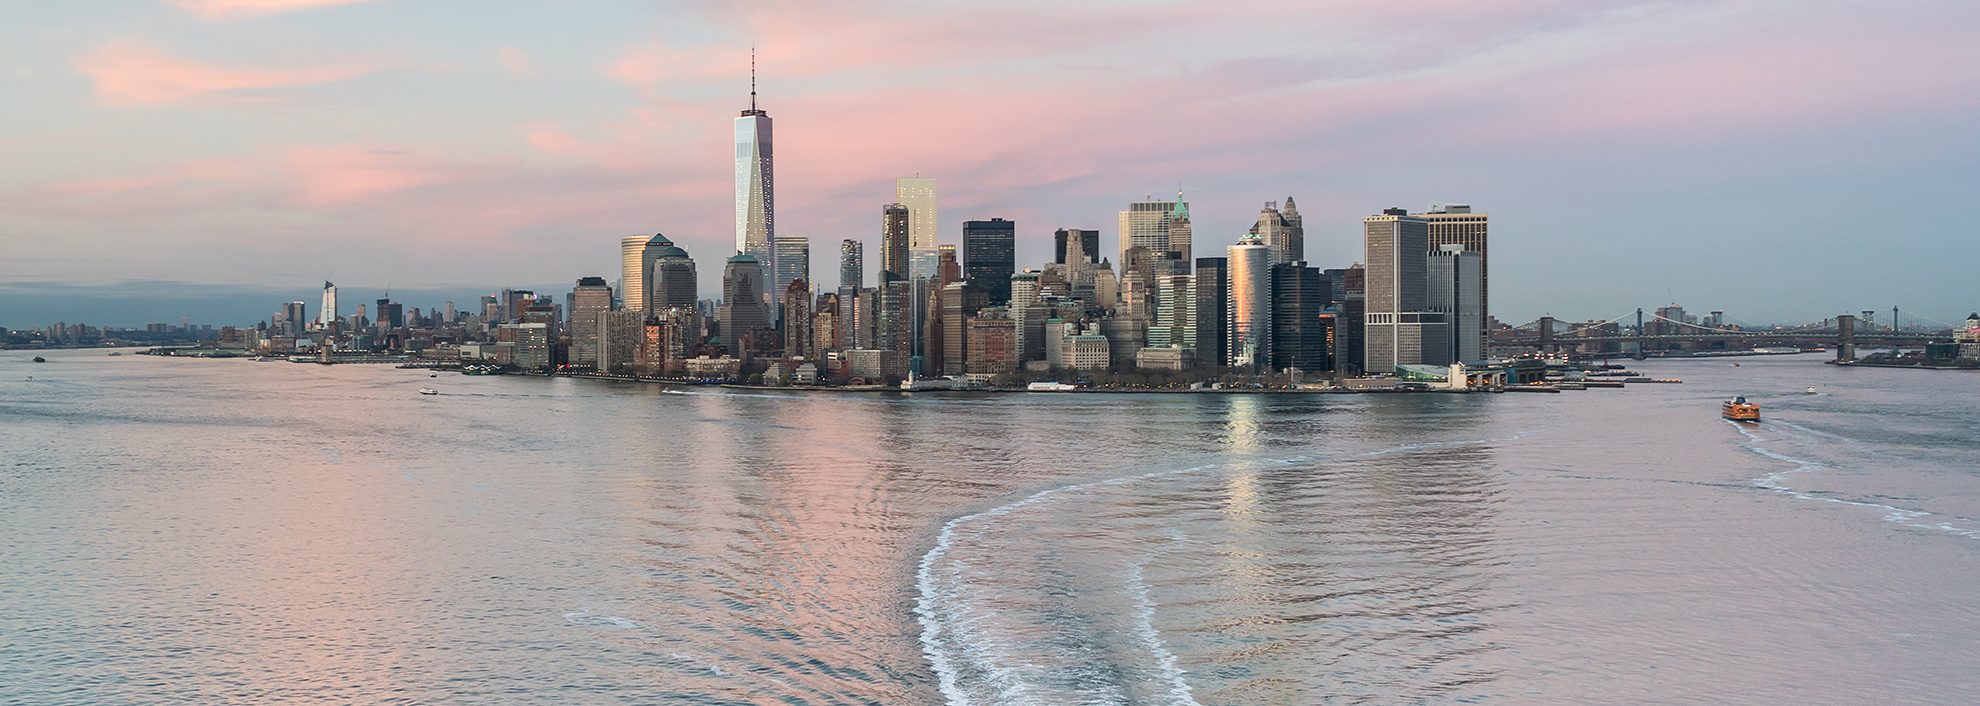 Manhattan skyline with ferry